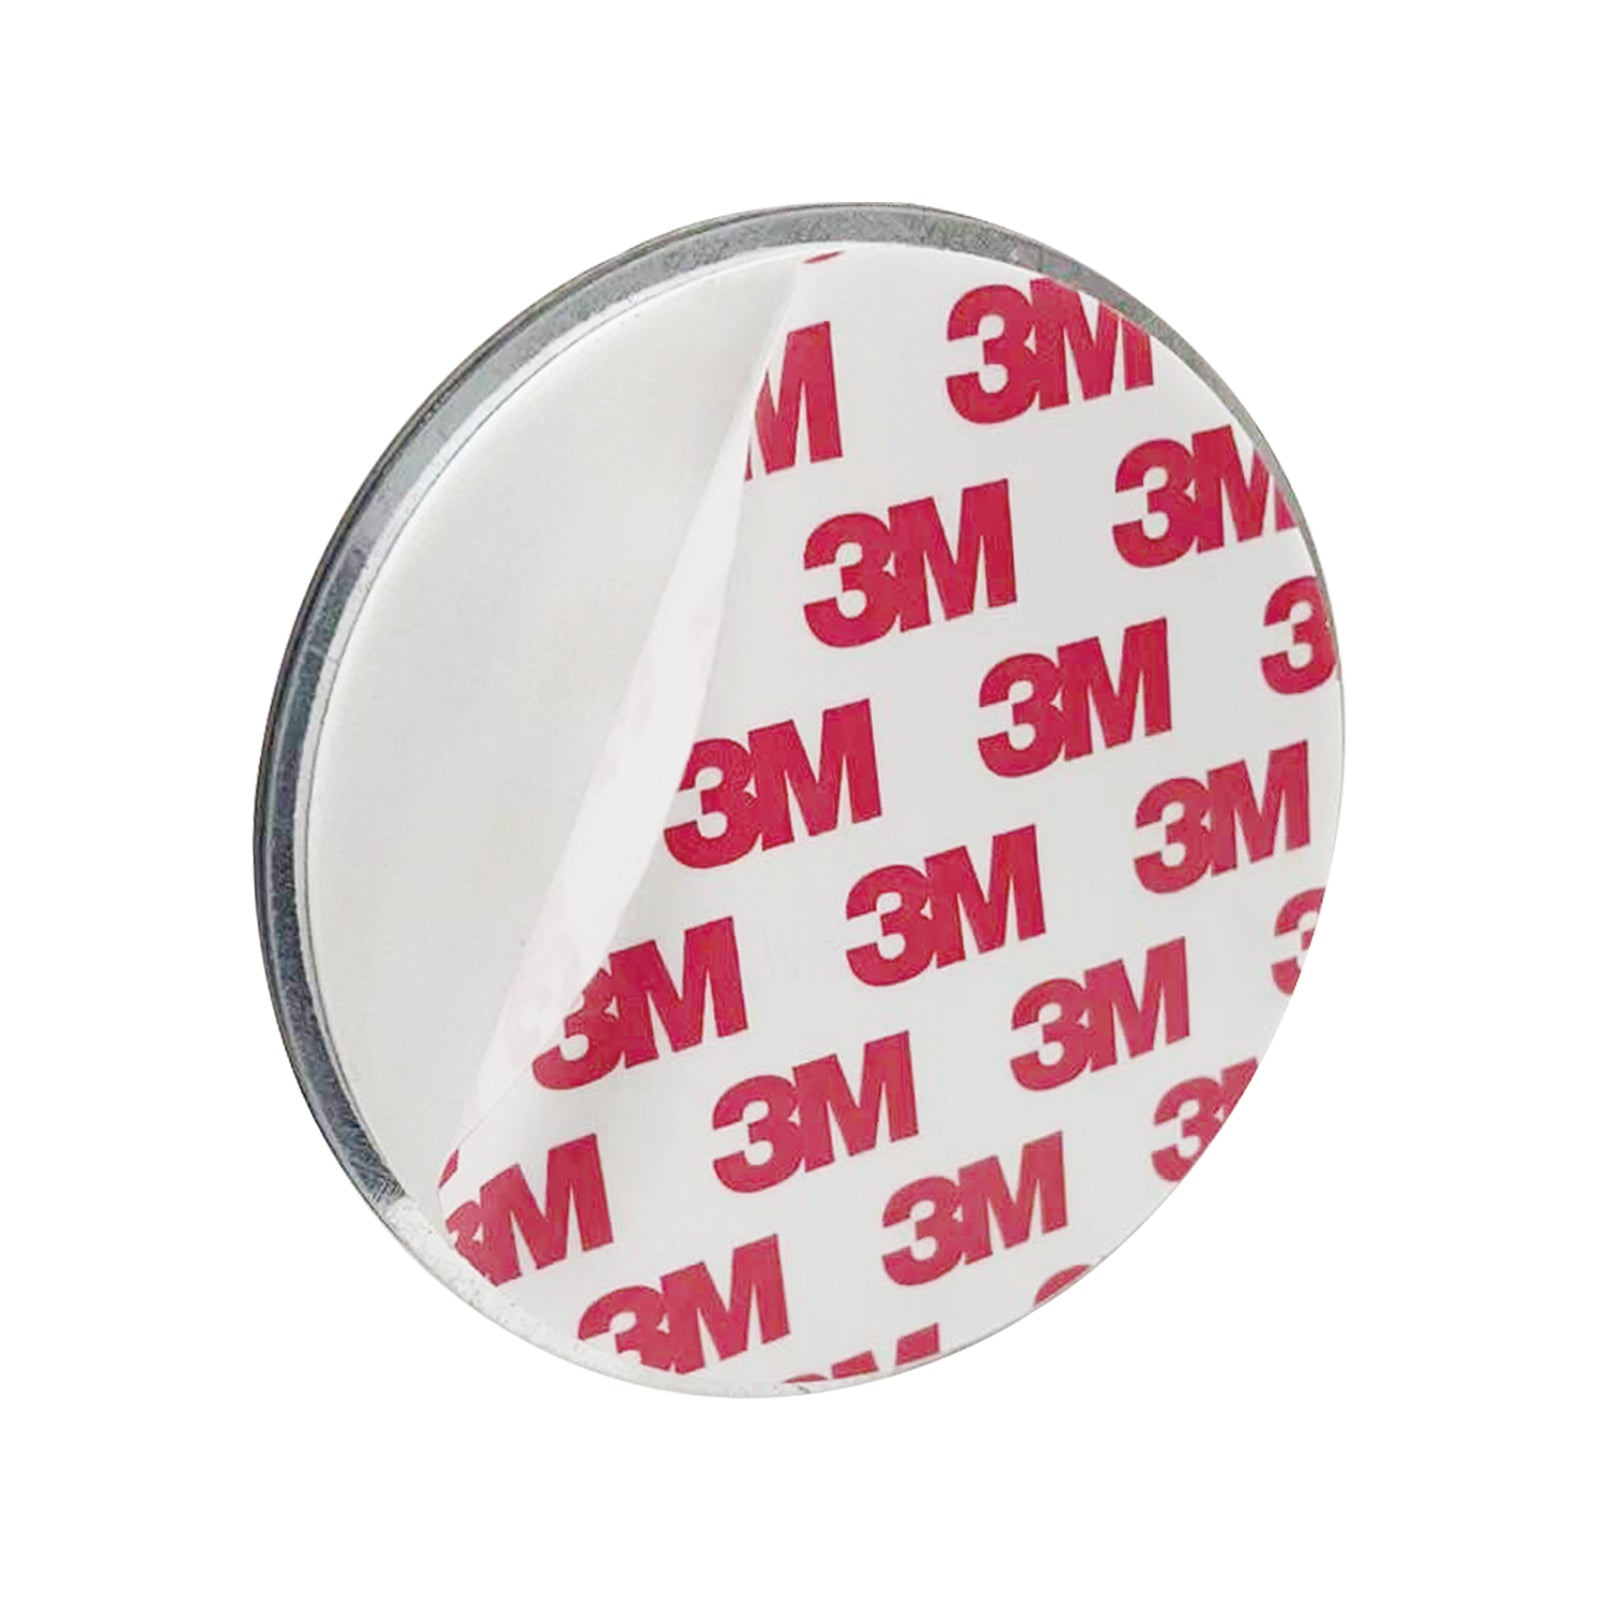 DVM-SB90M: Optesch Rauchdetektor, ersatzbar Batterie, magnetesch Montage